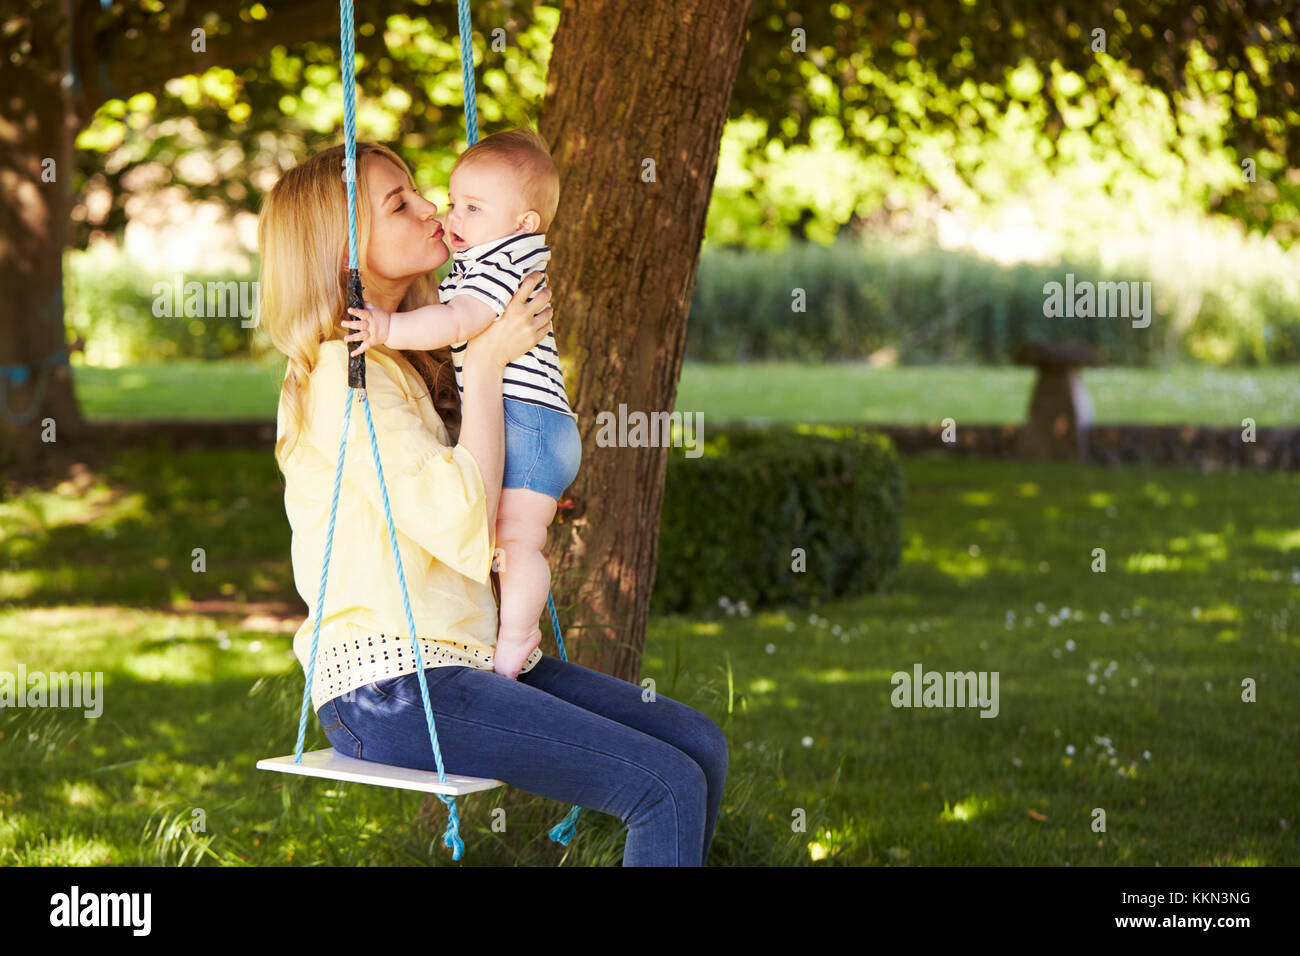 Madre besando a su hijo mientras se sientan en el balancín de jardín Foto de stock